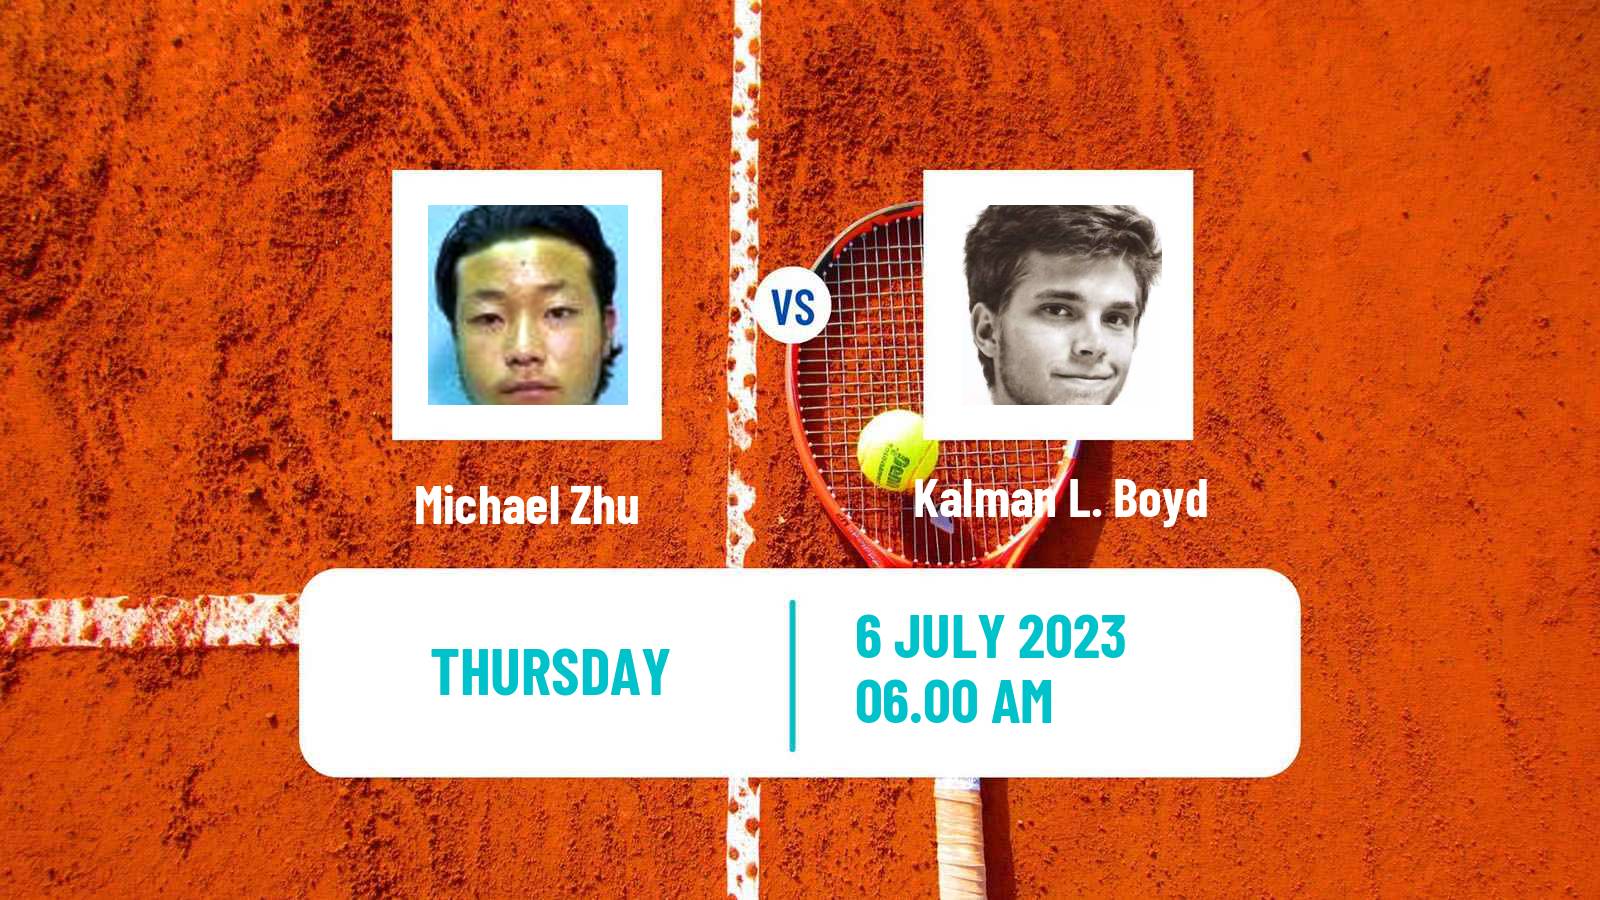 Tennis ITF M15 Monastir 27 Men Michael Zhu - Kalman L. Boyd